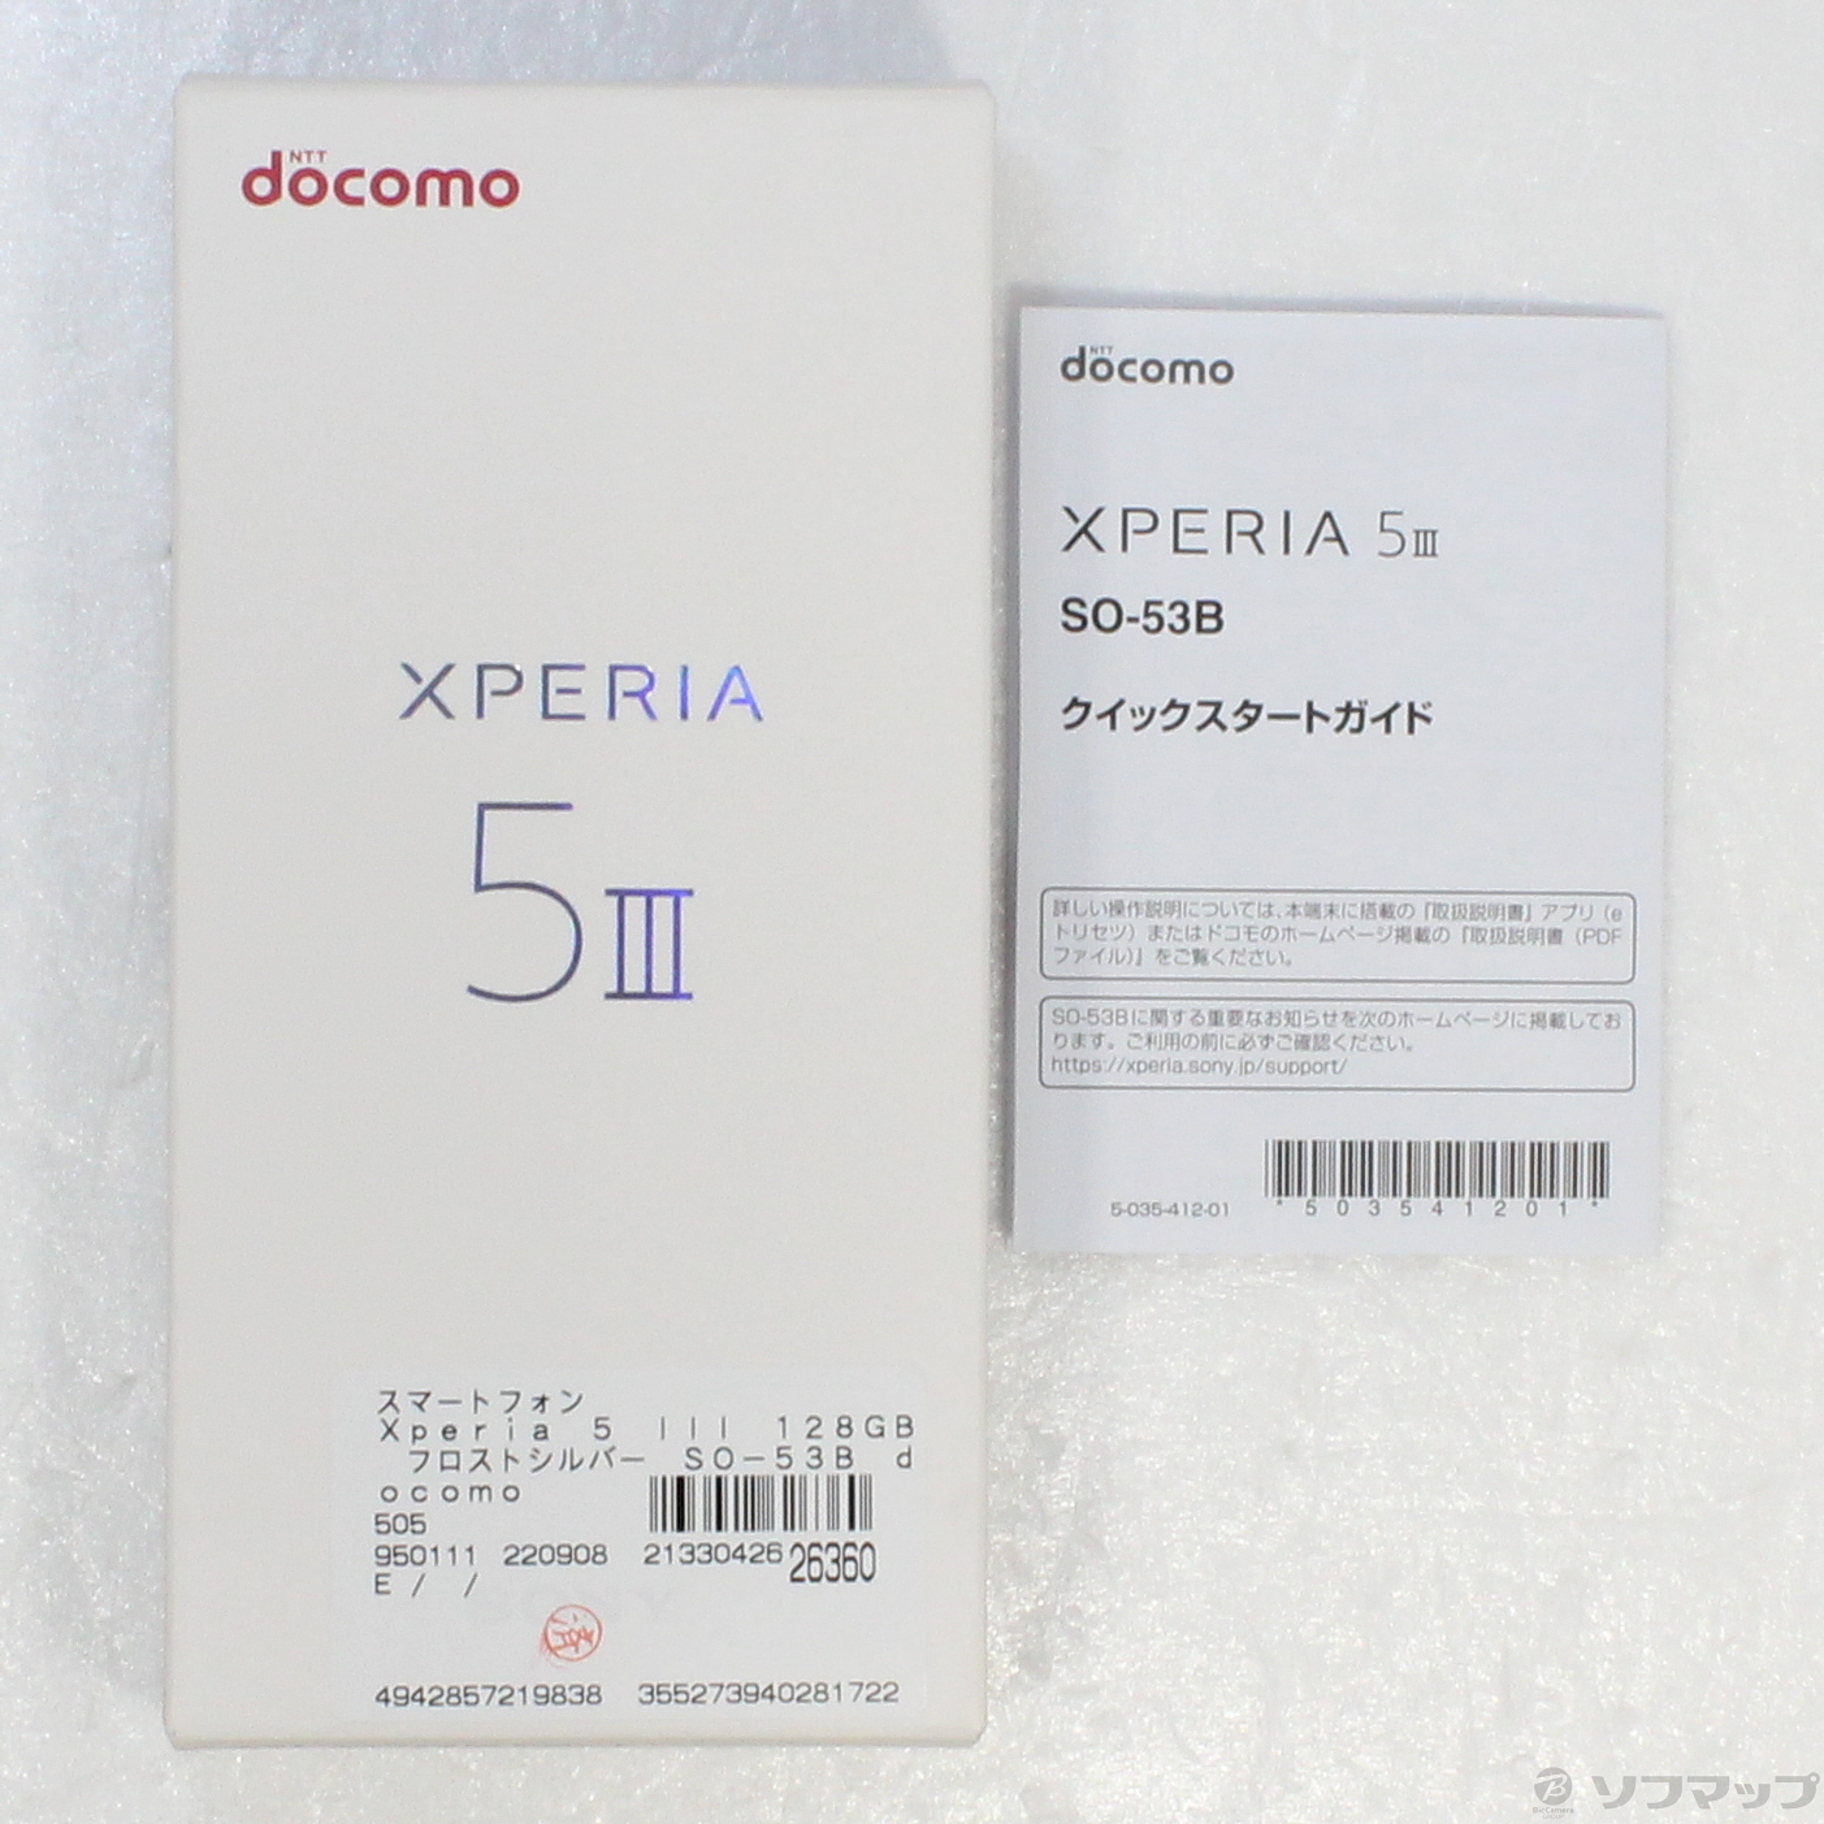 スマートフォン/携帯電話 スマートフォン本体 Xperia 5 III 128GB フロストシルバー SO-53B docomoロック解除SIMフリー